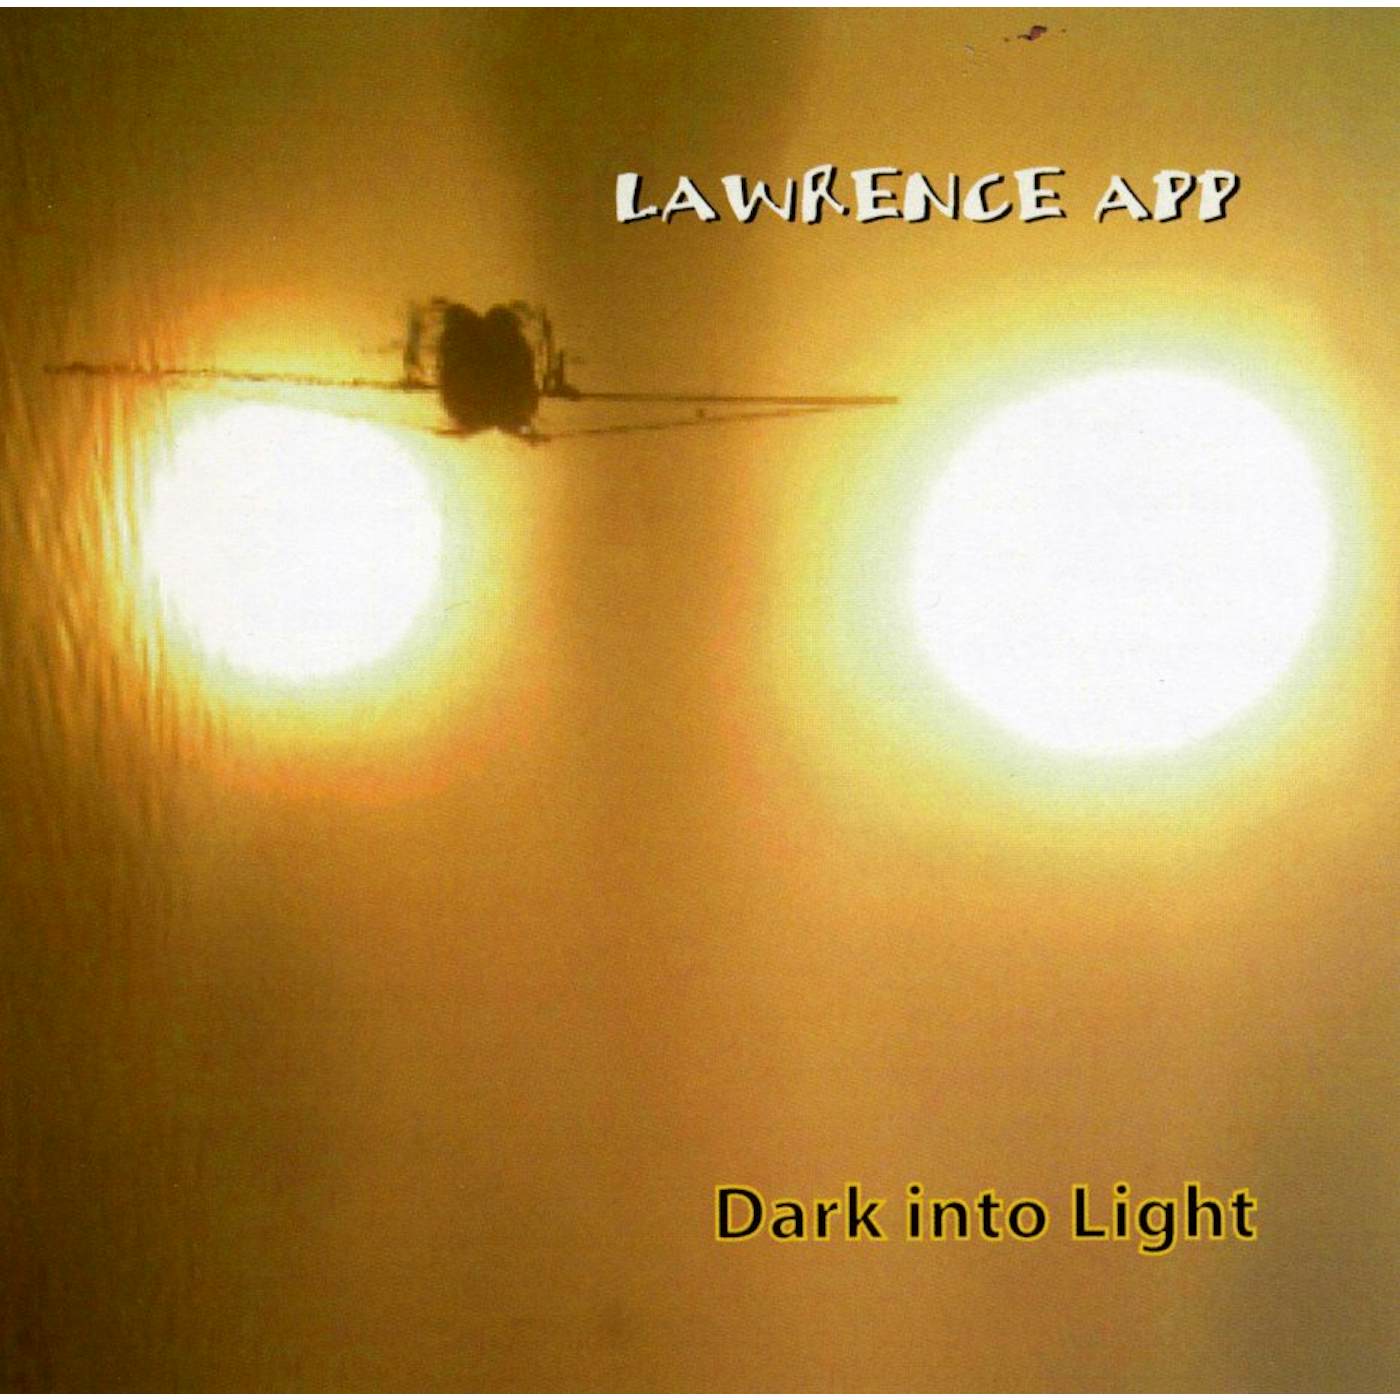 Lawrence App DARK INTO LIGHT CD